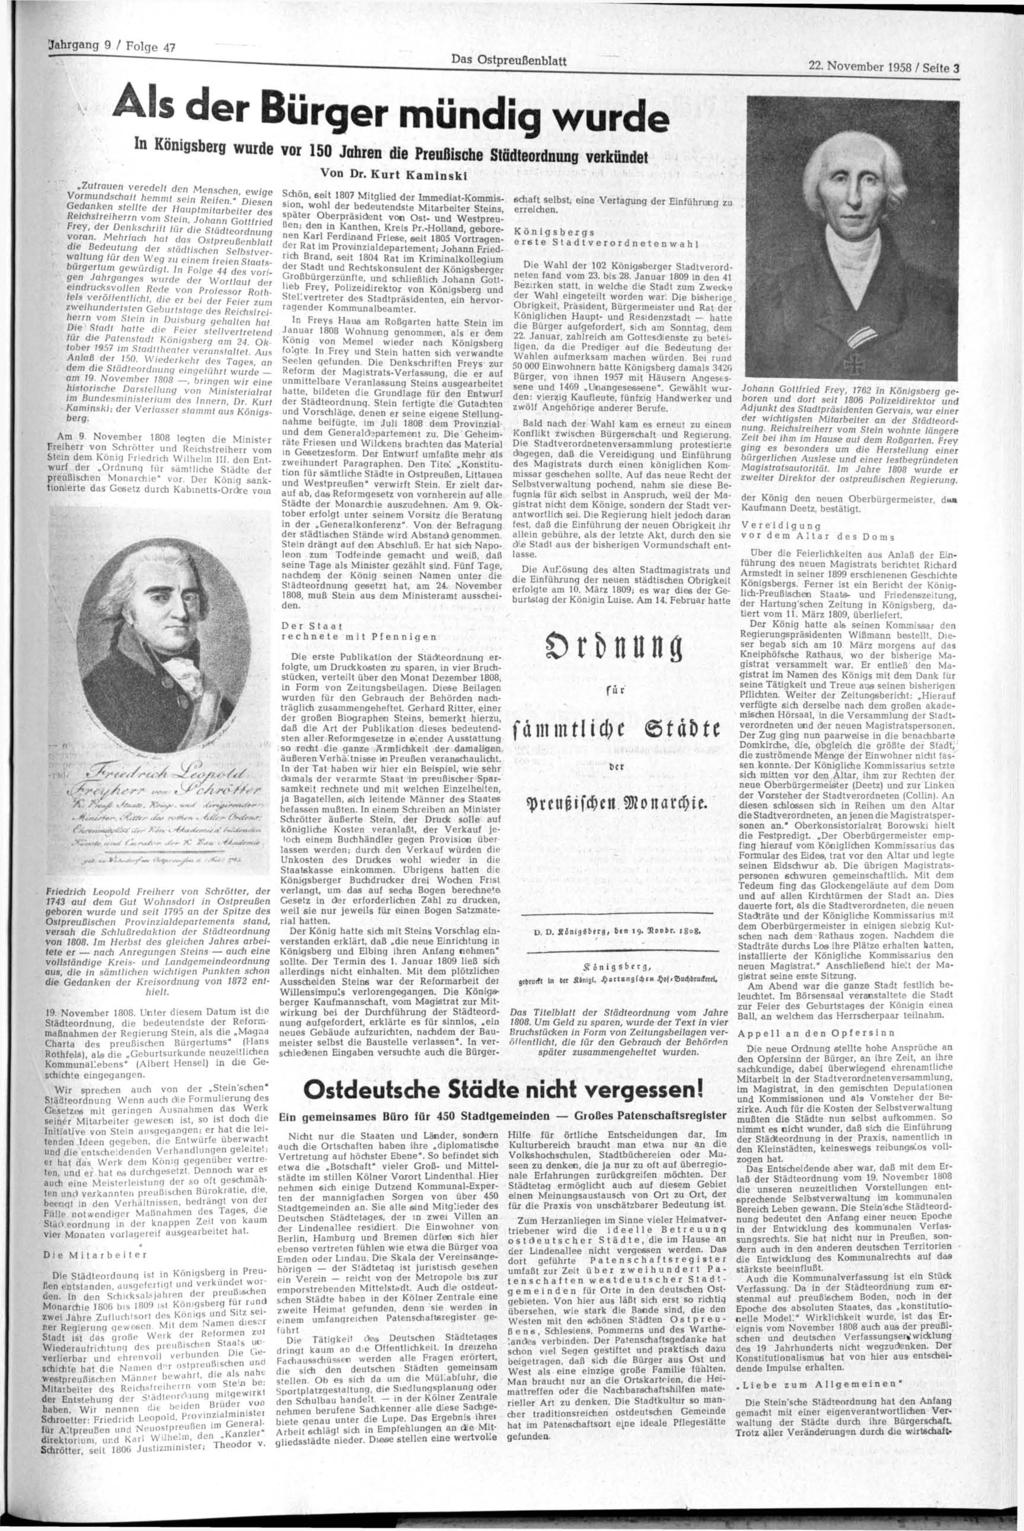 Jahrgang 9 / Folge 47 Das Ostpreußenblatt 22. November 1958 / Seite 3 A l s d e r B ü r g e r m ü n d i g w u r d e In Königsberg wurde vor 150 Jahren die Preußische Städteordnung verkündet.